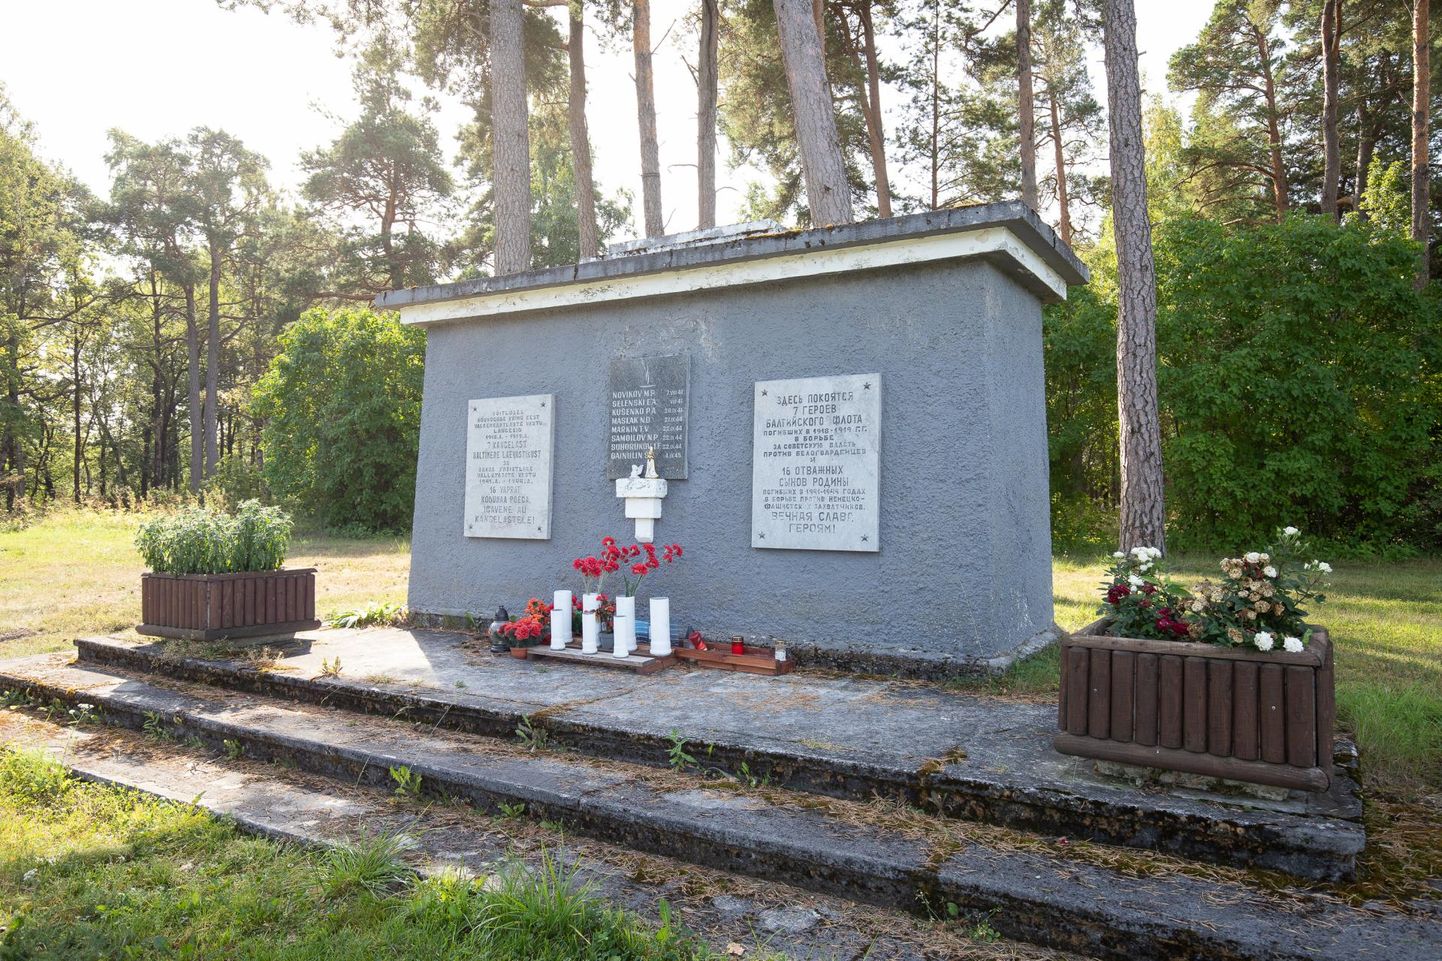 Памятник на братской могиле в Кукерпаллимяэ, напоминающий алтарь, был открыт 6 августа 1950 года.